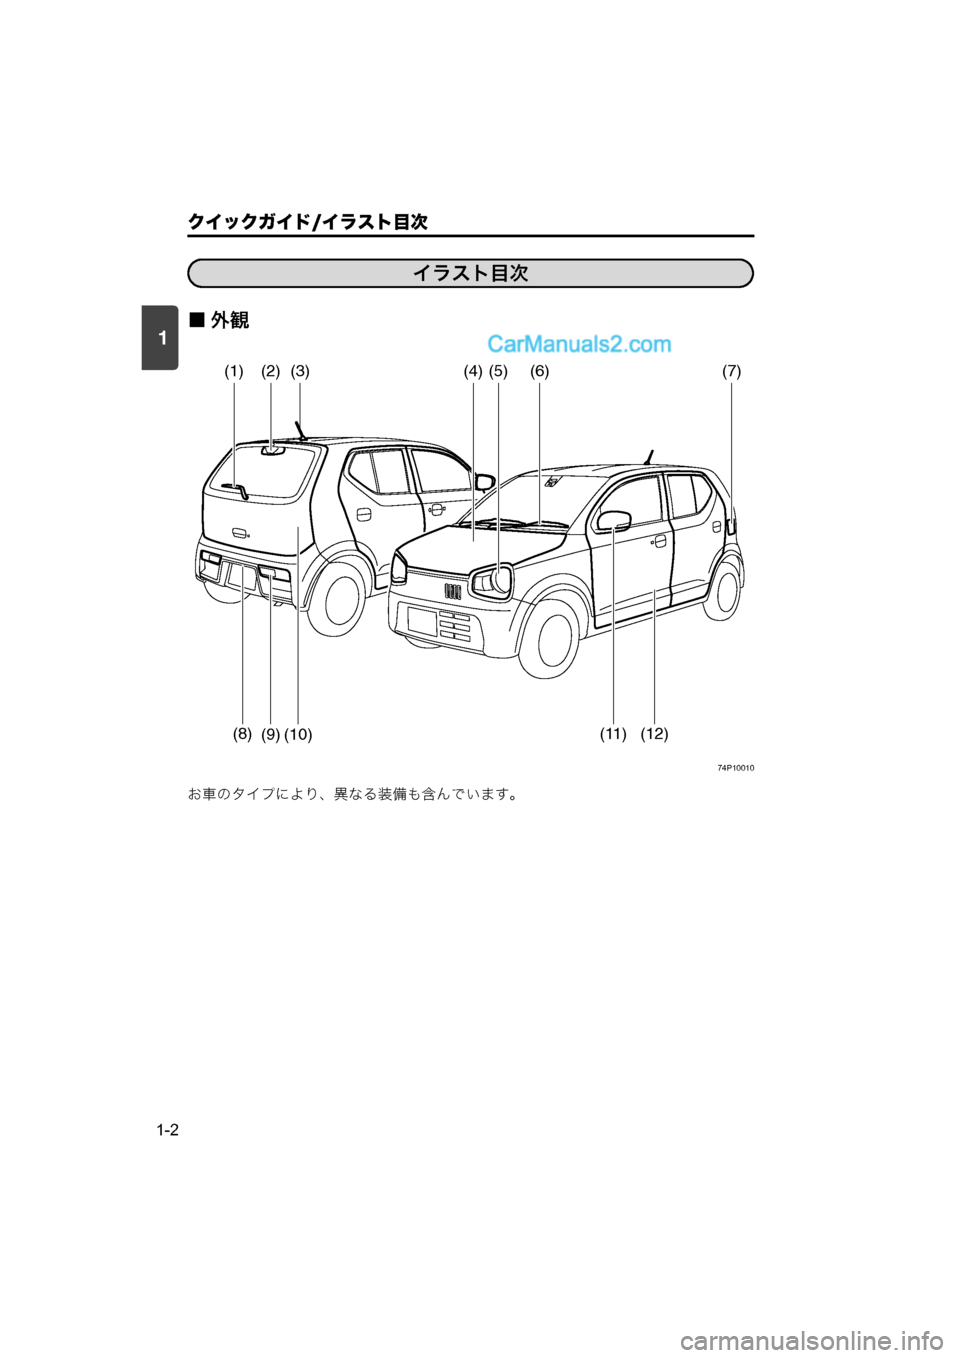 MAZDA MODEL CARROL 2015  取扱説明書 (キャロル) (in Japanese) 1
クイックガイド/イラスト目次
1-2
■外観
74P10010
お車のタイプにより、異なる装備も含んでいます。
1. クイックガイドイラスト目次
イラスト目次
(1